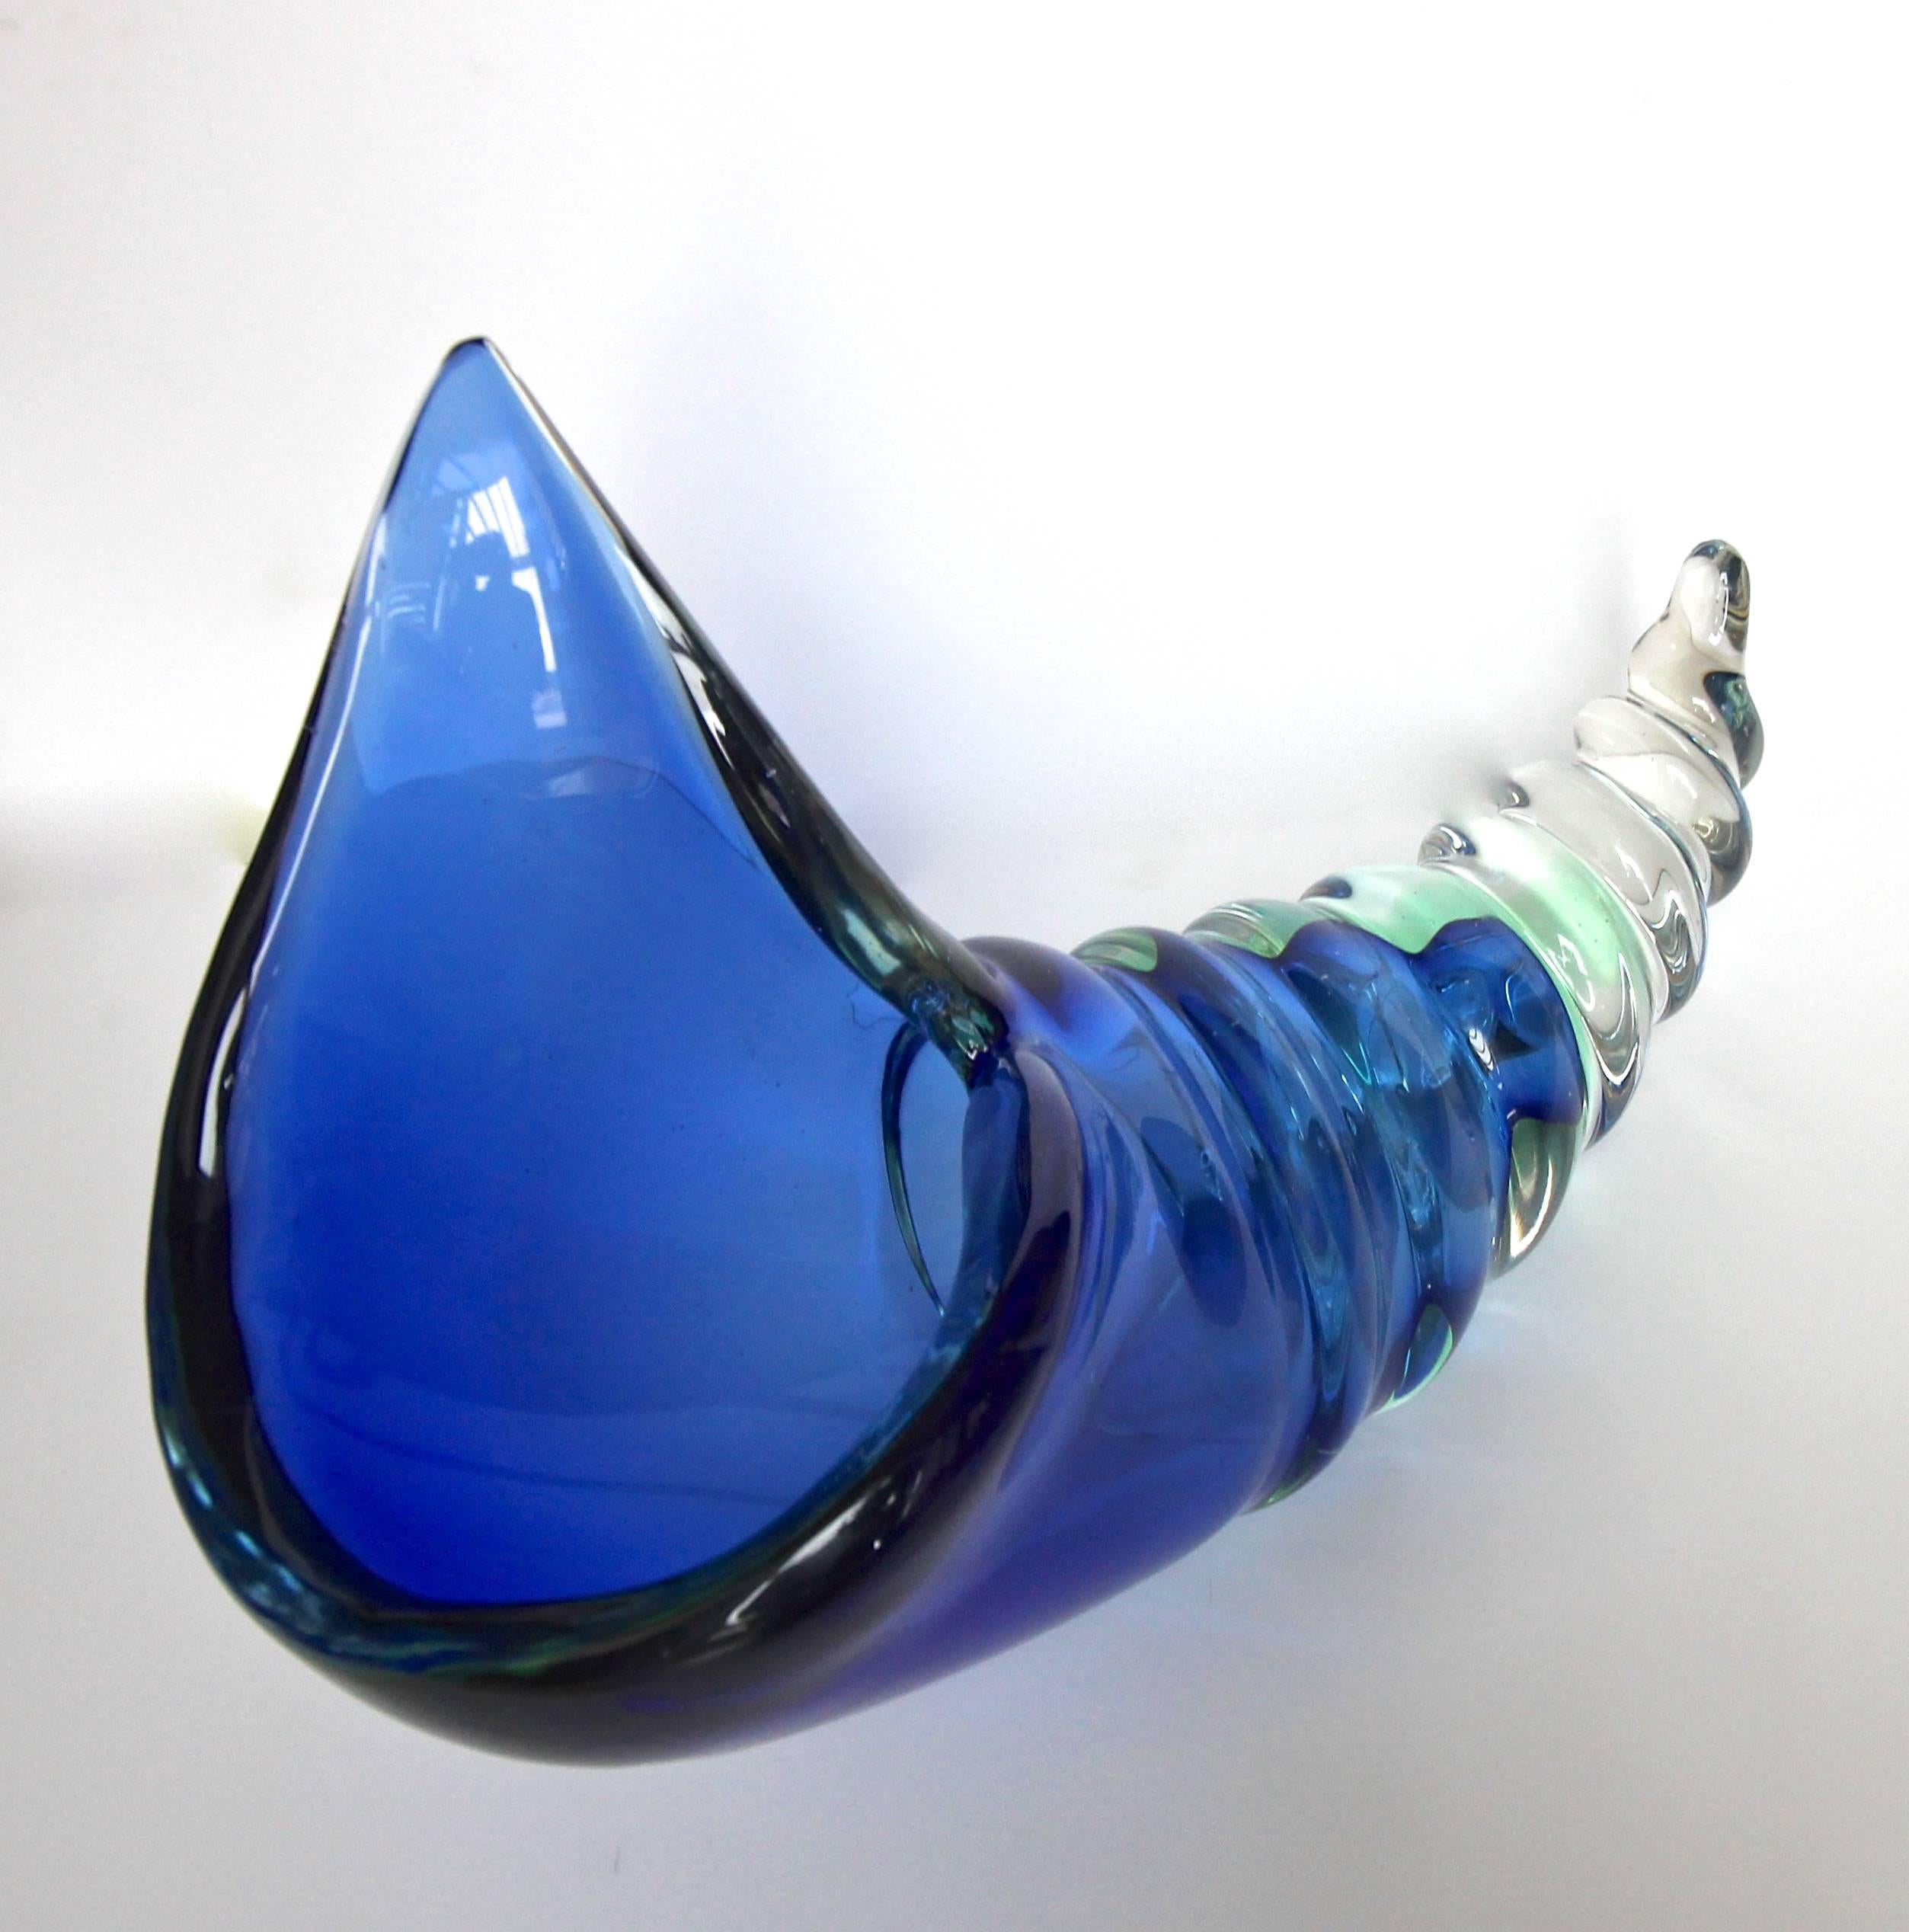 Große auffällige Muschel oder Muschel geformt Seguso Murano Sommerso italienischen Glasschale Mittelstück. Dickes, mundgeblasenes Glas in sattem Blau mit subtilen Schattierungen von Agua-Grün. Schweres Gewicht und große Gesamtportionen.